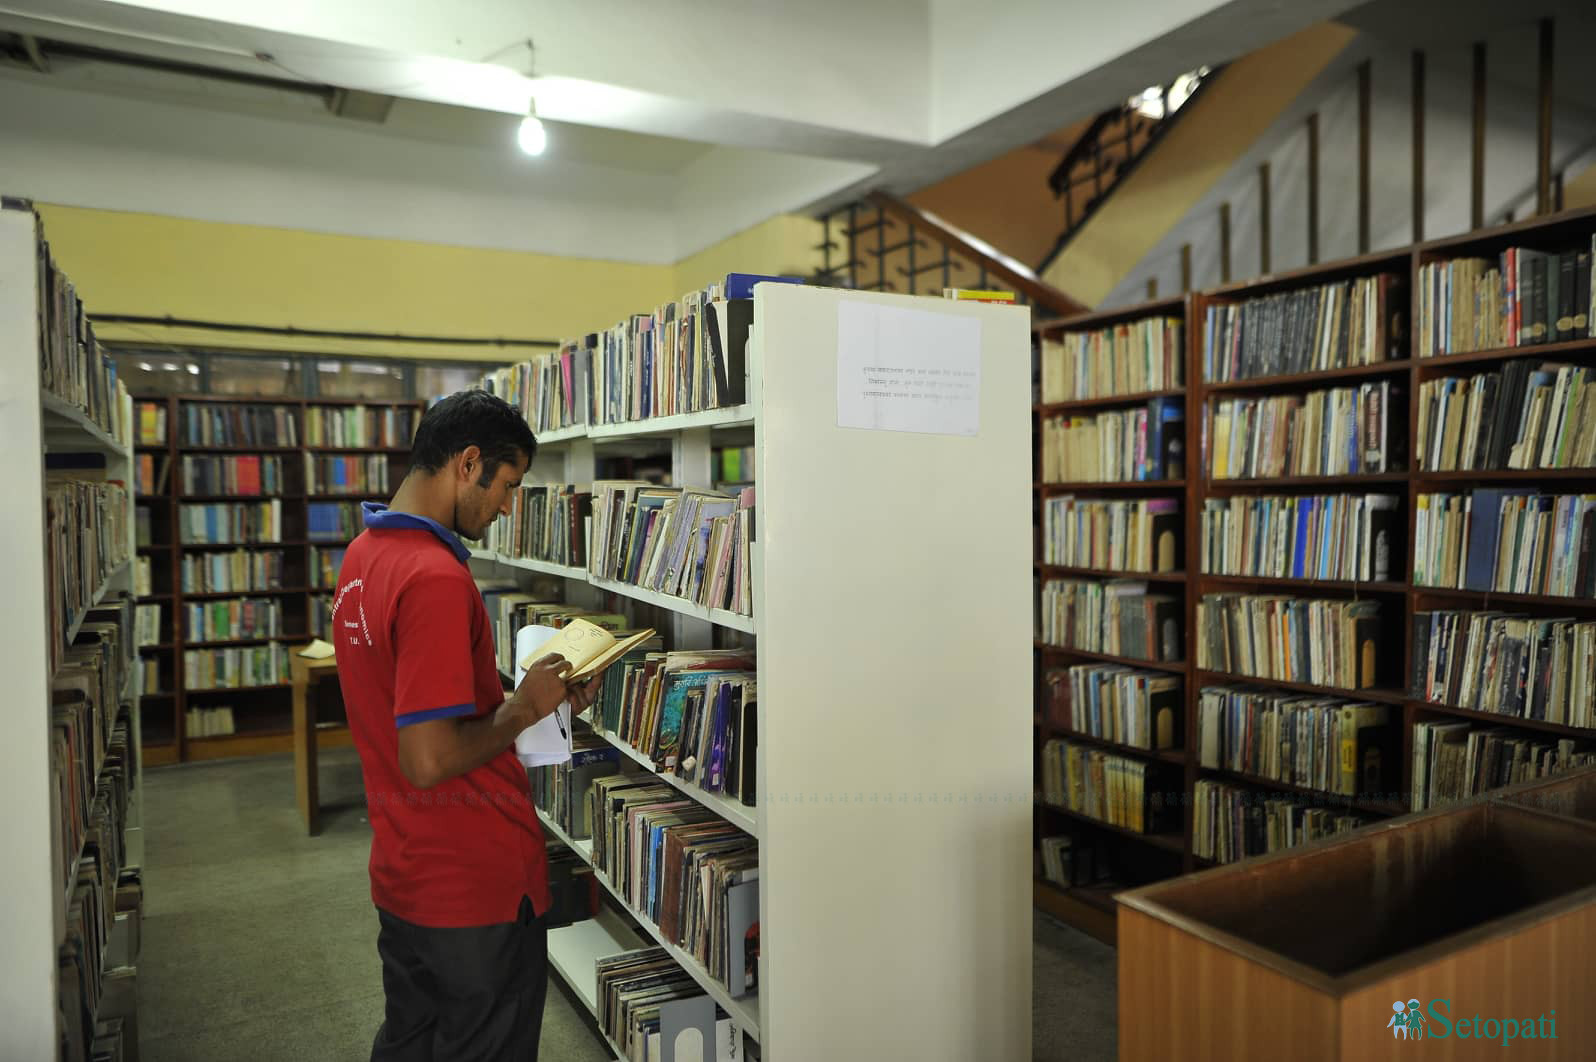 त्रिवि केन्द्रीय पुस्तकालयमा पुस्तक पढ्दै एक युवा।तस्बिरः नारायण महर्जन